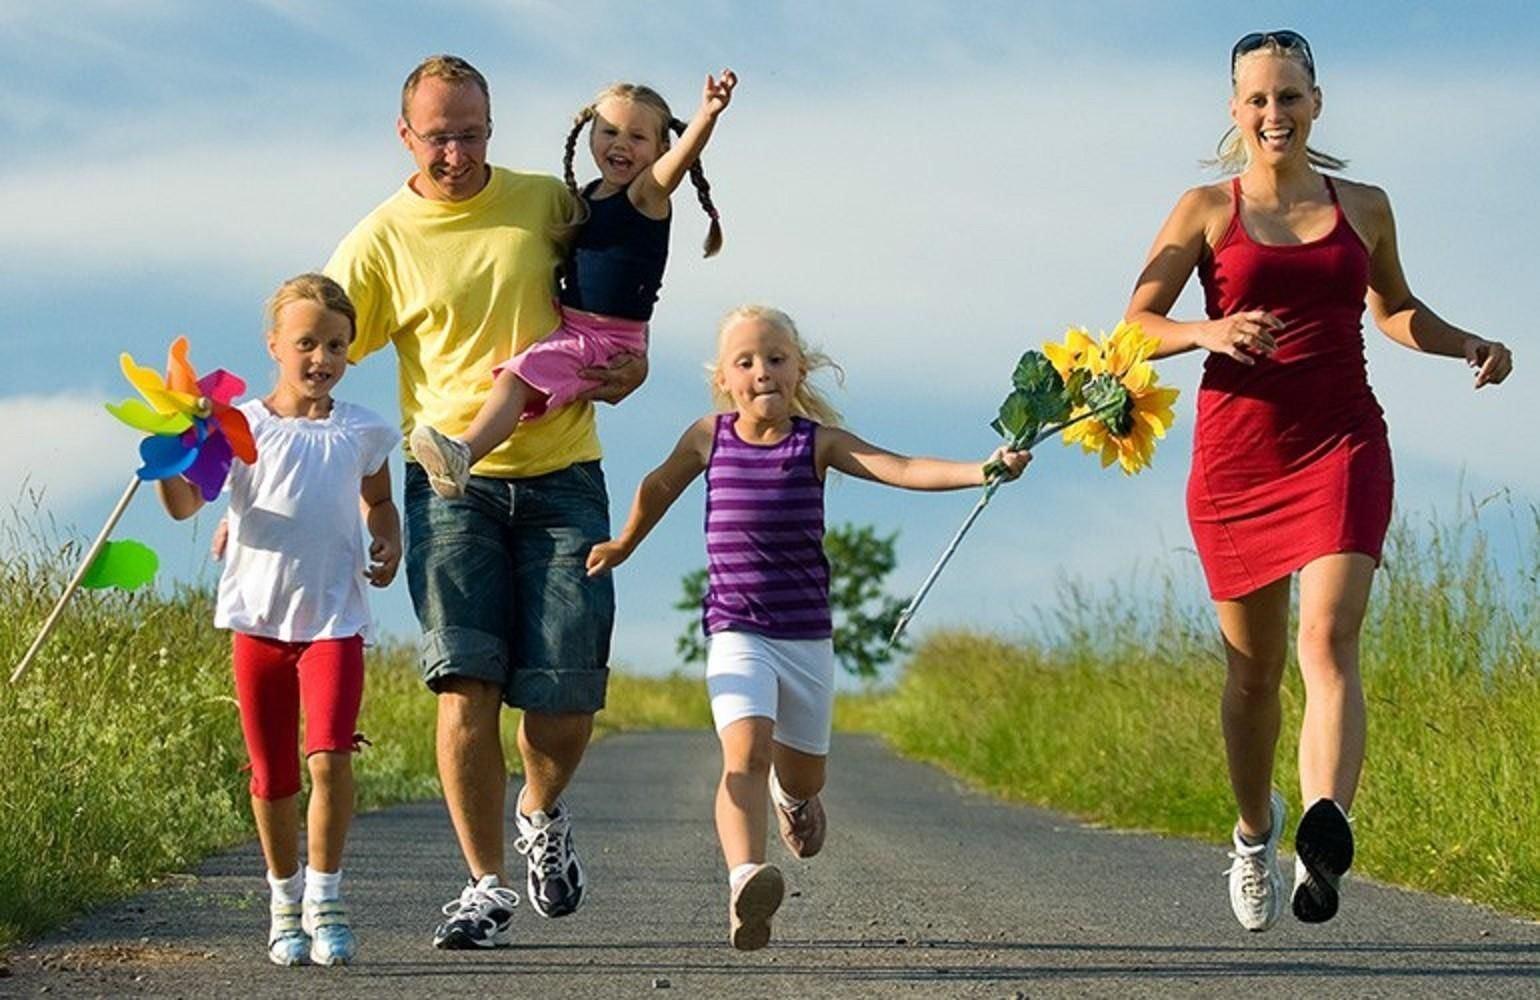 Путь к счастливой жизни. Здоровый образ жизни. Спортивная семья. Активный и здоровый образ жизни. Спортивная семья с детьми.